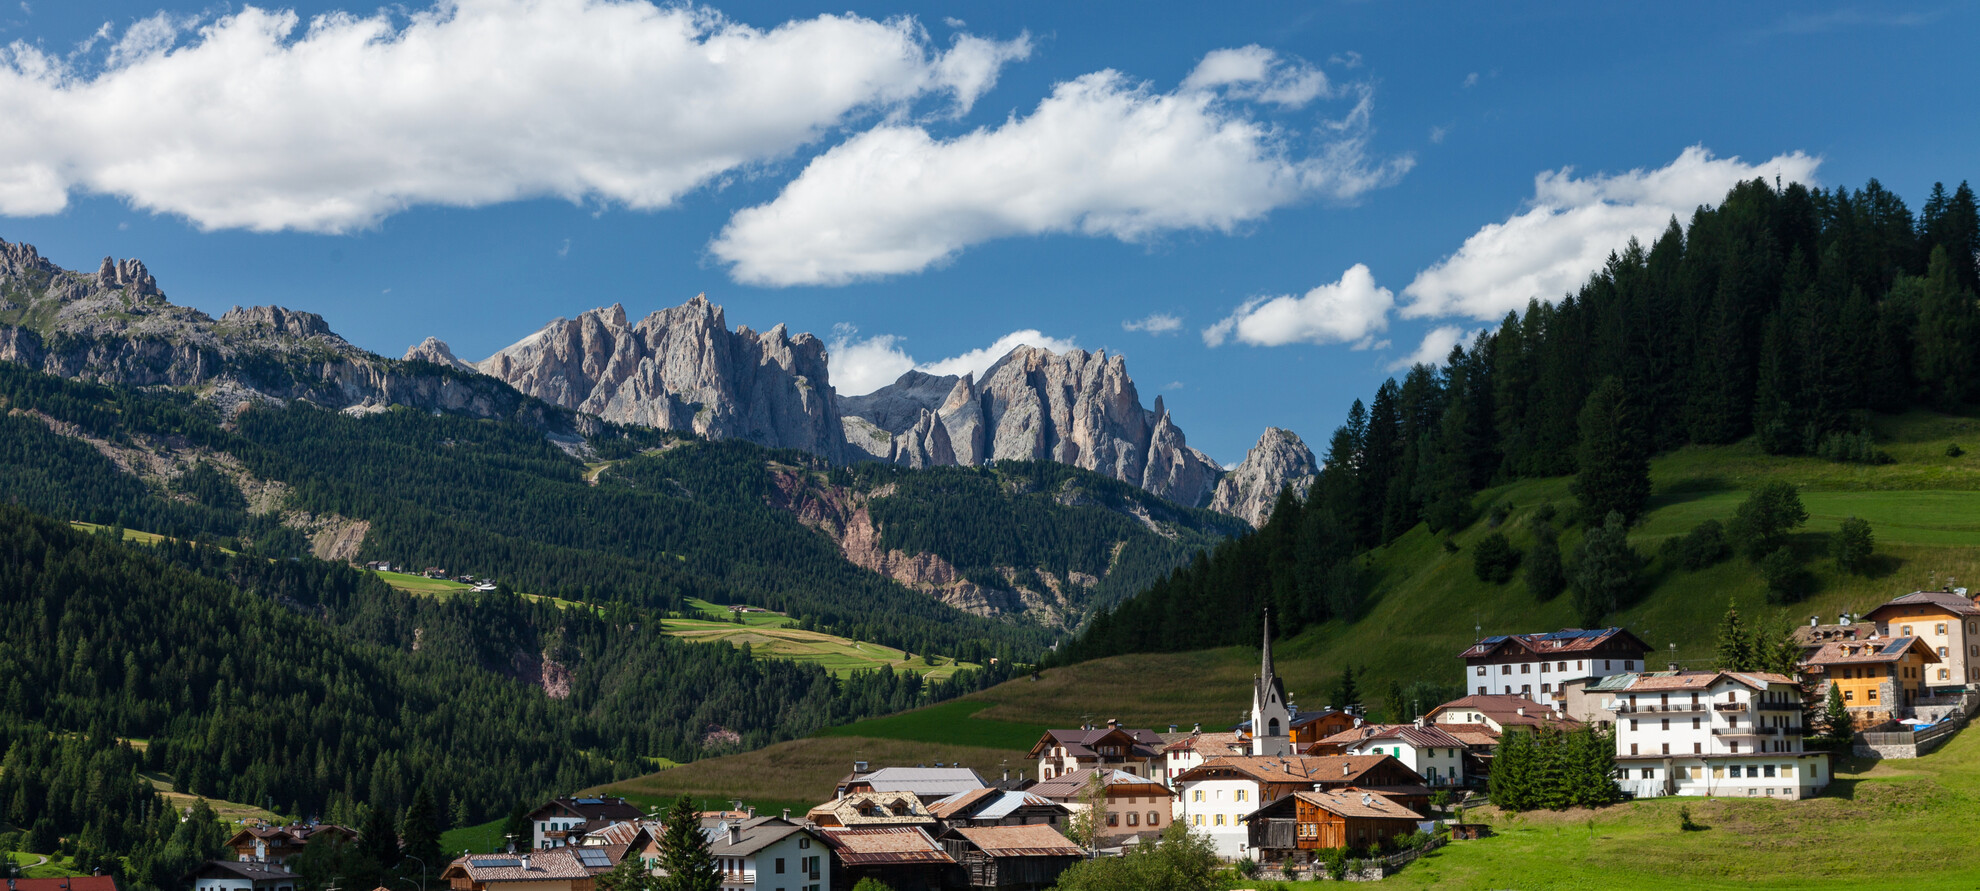 Val di Fassa - Moena - Am Fuße der schönsten Dolomiten des Trentino zu befinden